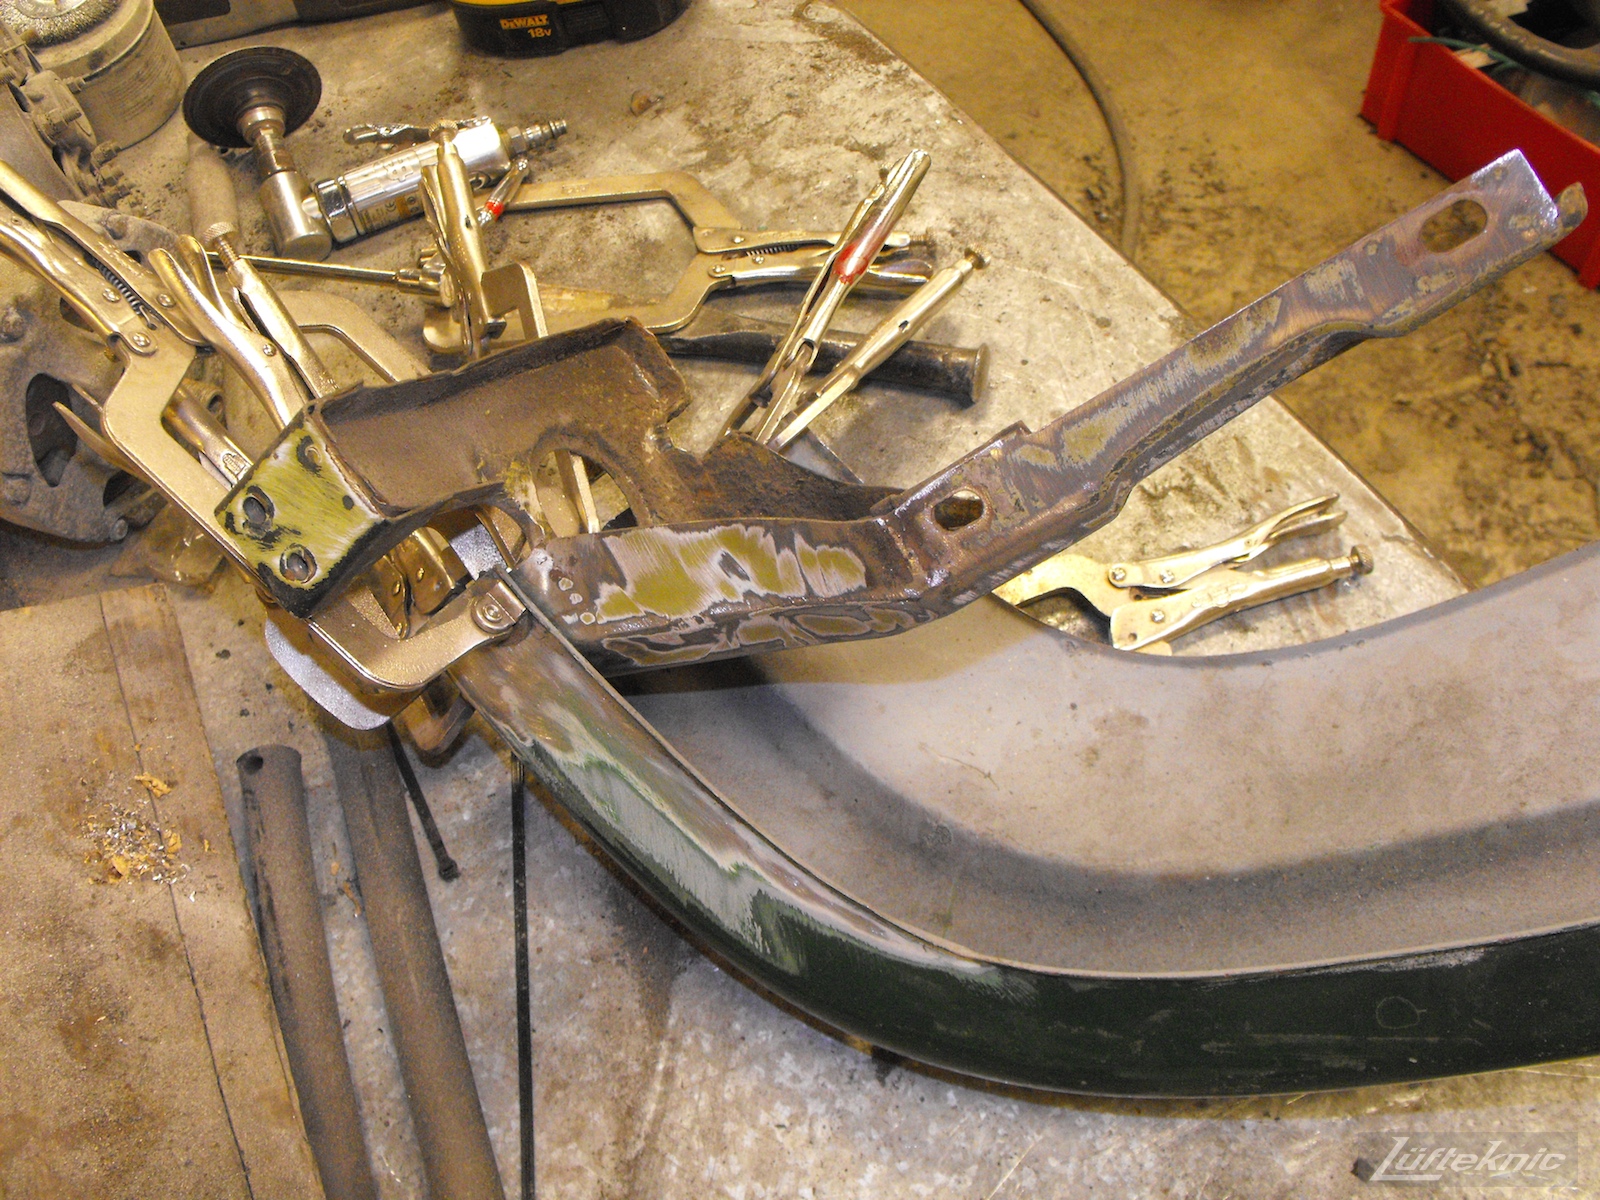 Front bumper repair on an Irish Green Porsche 912 undergoing restoration at Lufteknic.